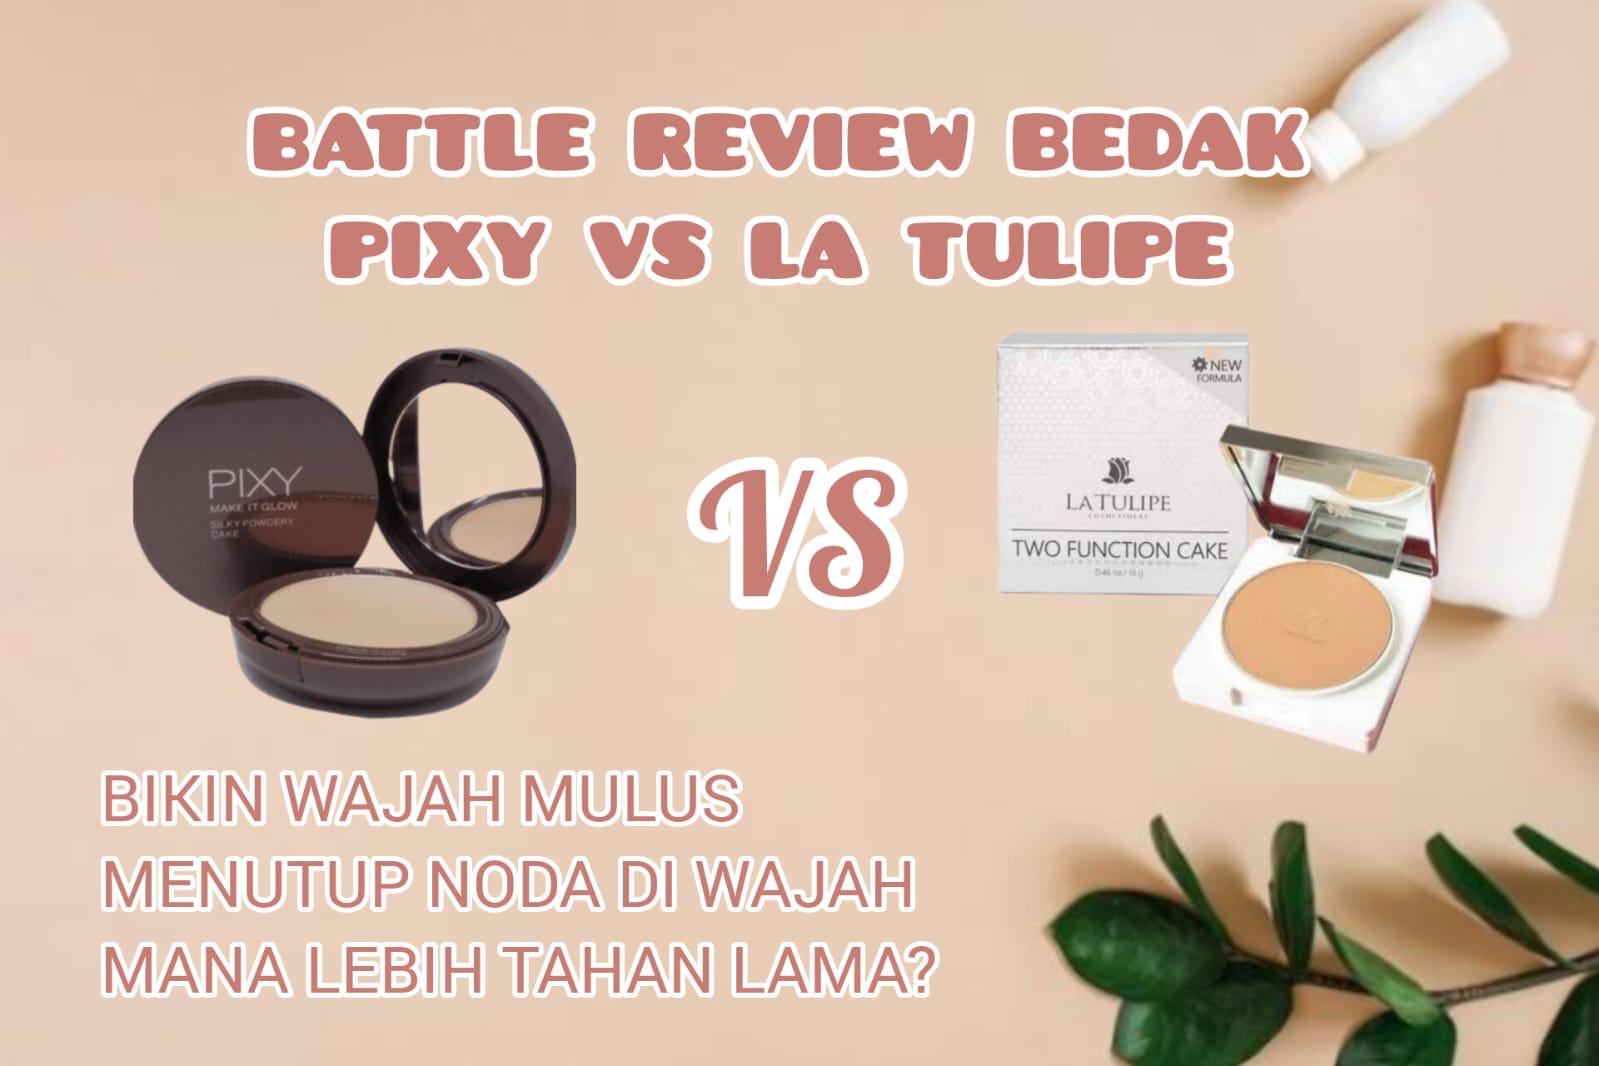 Review Battle Bedak Pixy Make It Glow vs La Tulipe, Sama-sama Produk Lokal Mana yang Lebih Bagus dan Awet?